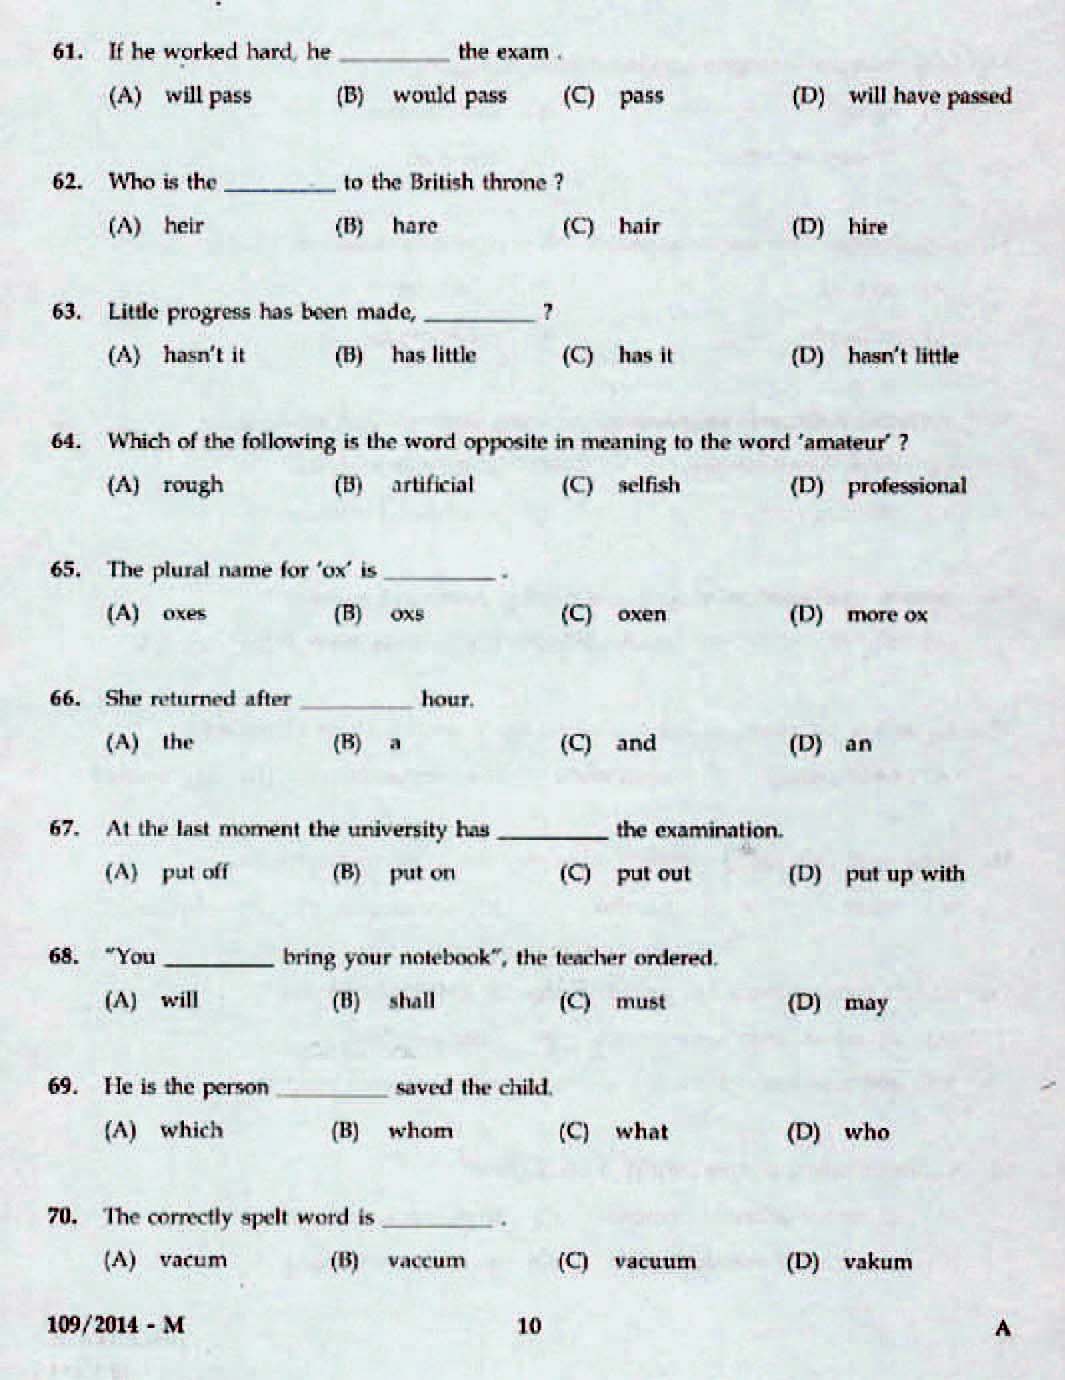 Kerala Last Grade Servants Exam 2014 Question Paper Code 1092014 M 8